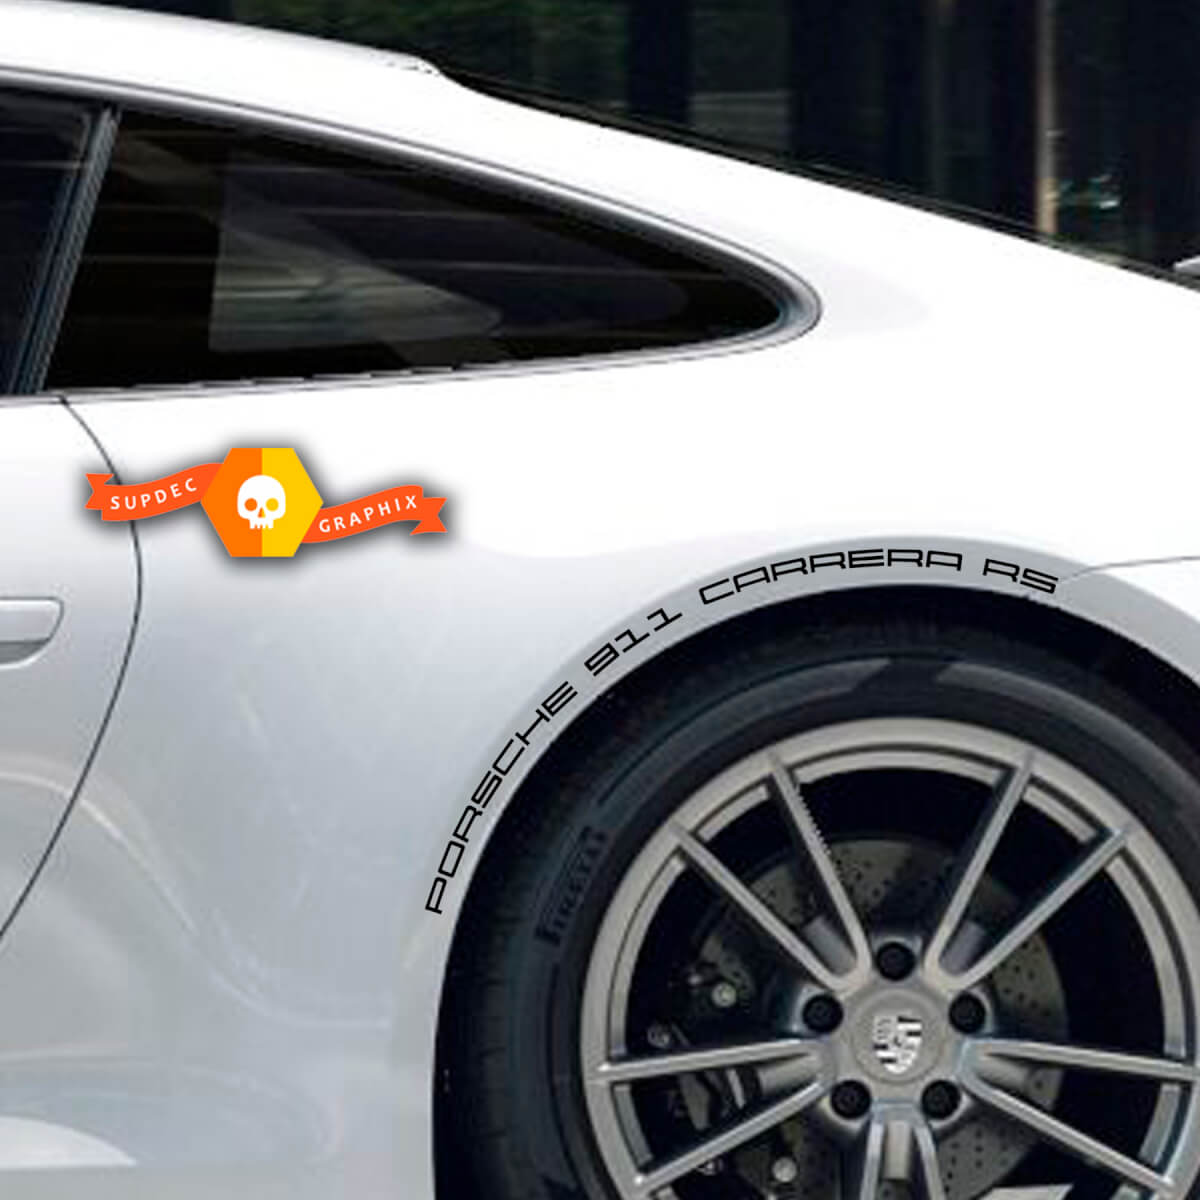 2 Porsche 911Carrera RS Decal Decal Arches Adesivo per decalcomanie